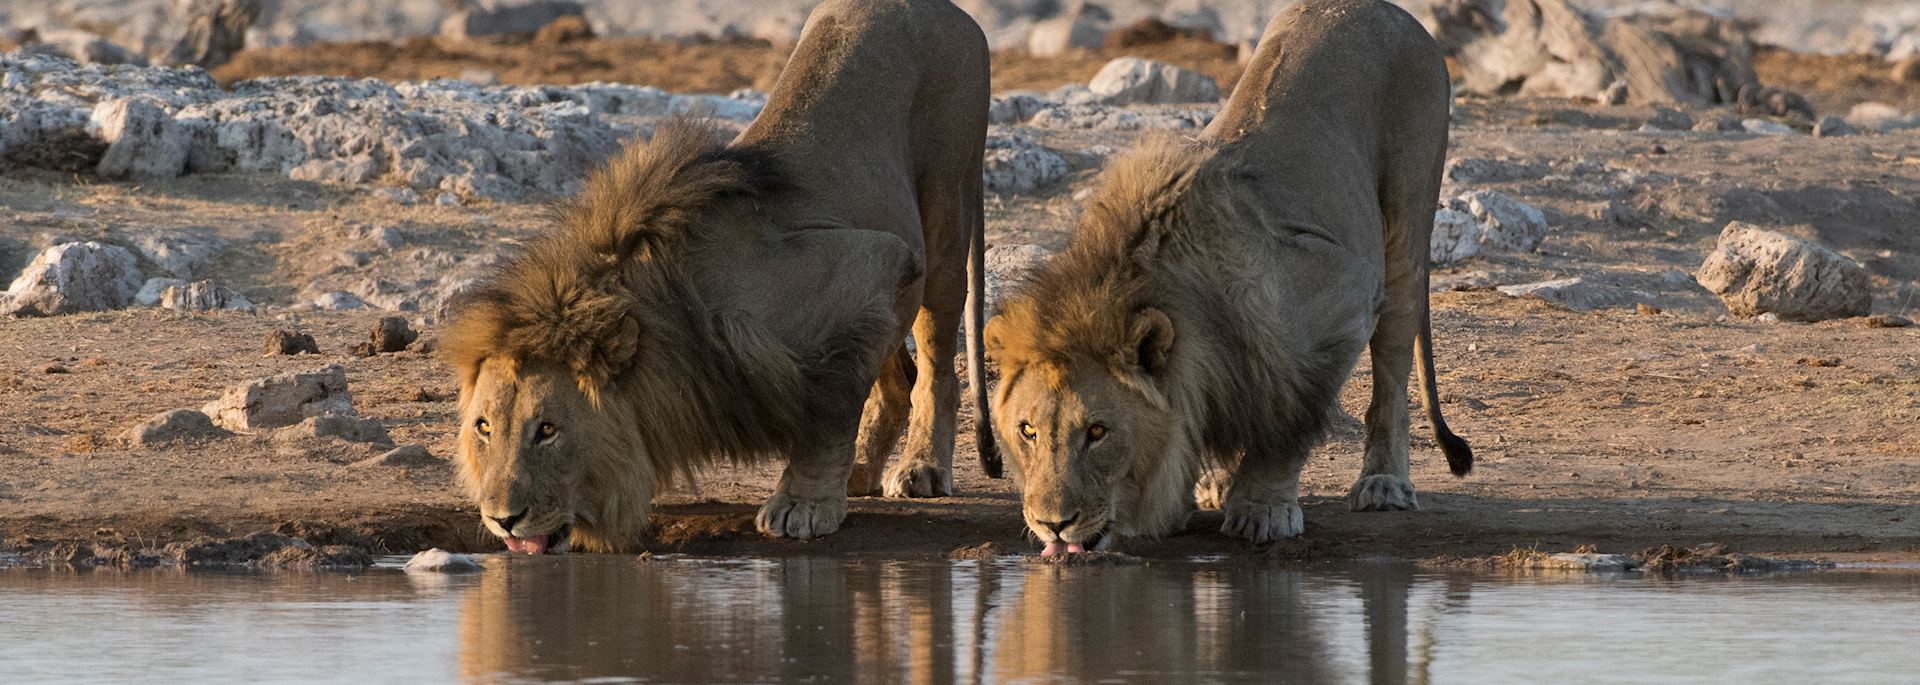 Lion, Etosha National Park